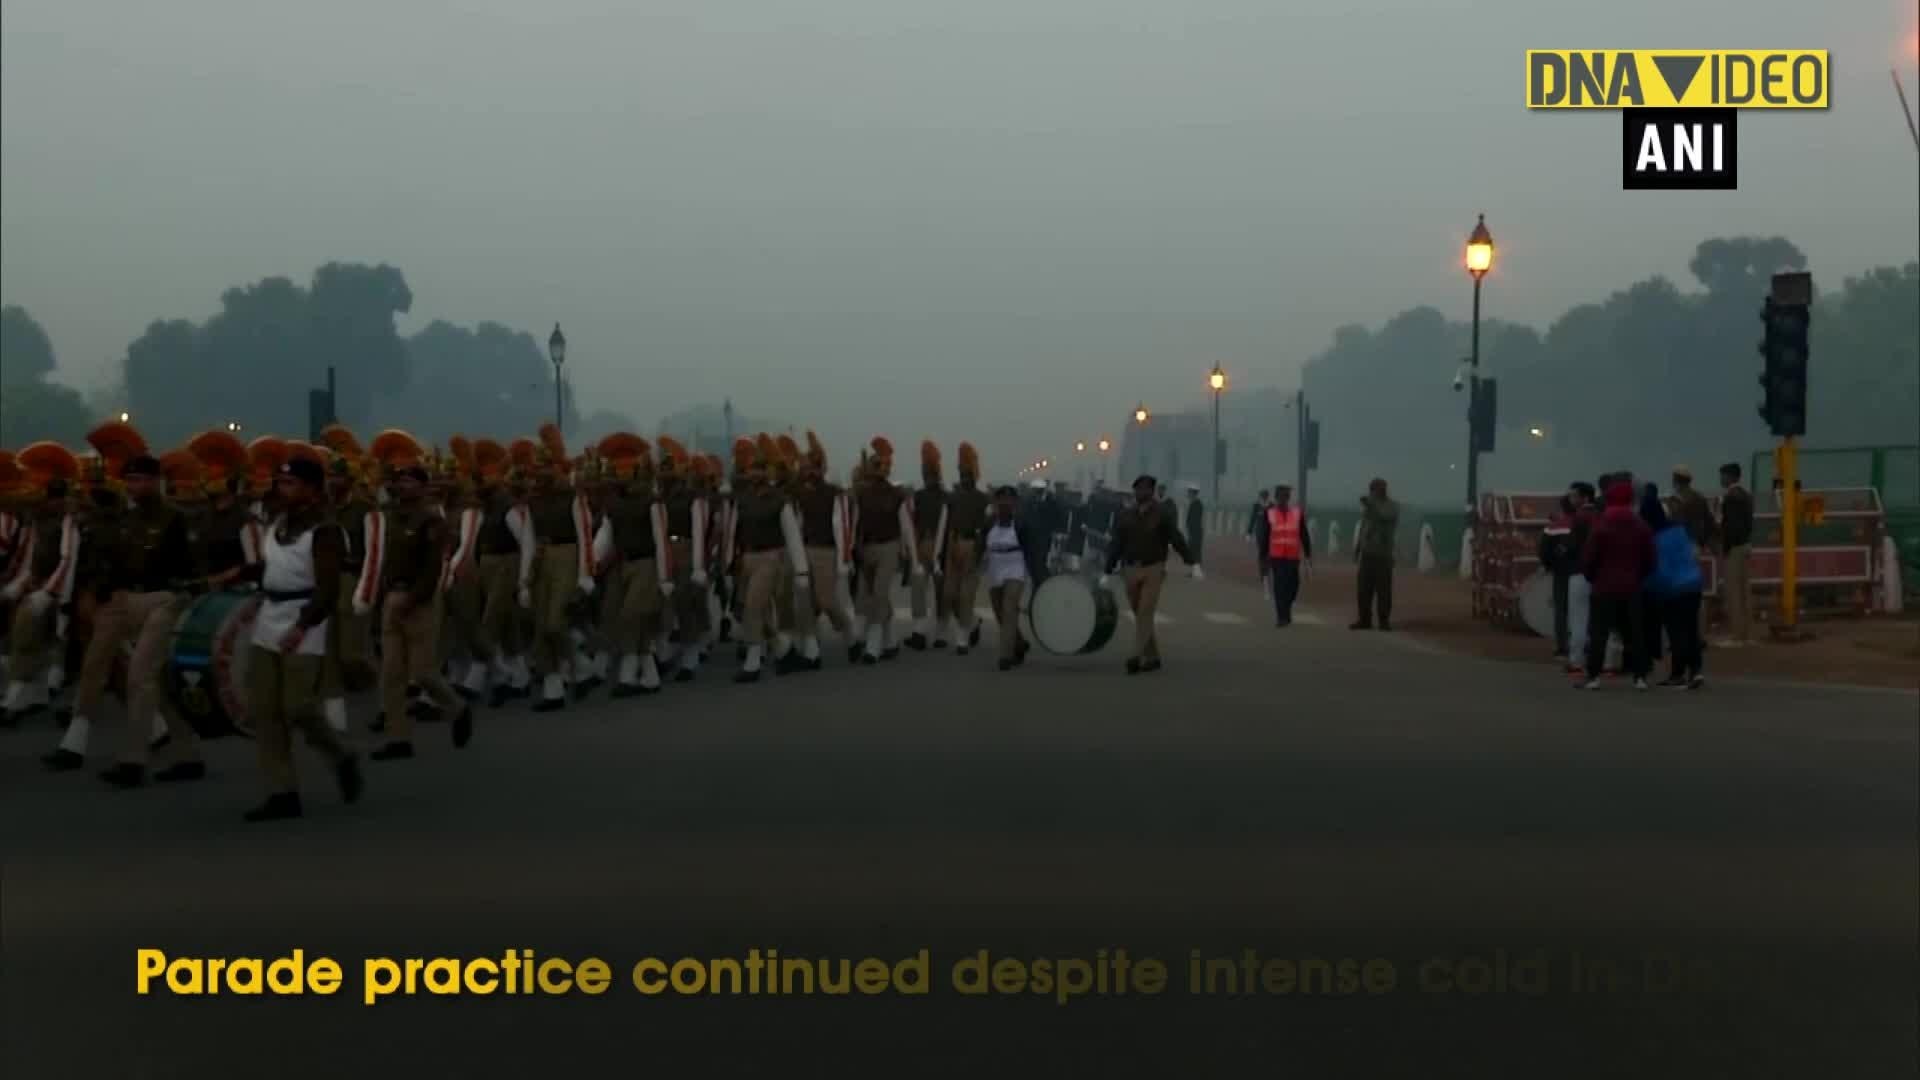 Republic Day Parade 2020 rehearsals begin despite cold in Delhi1920 x 1080